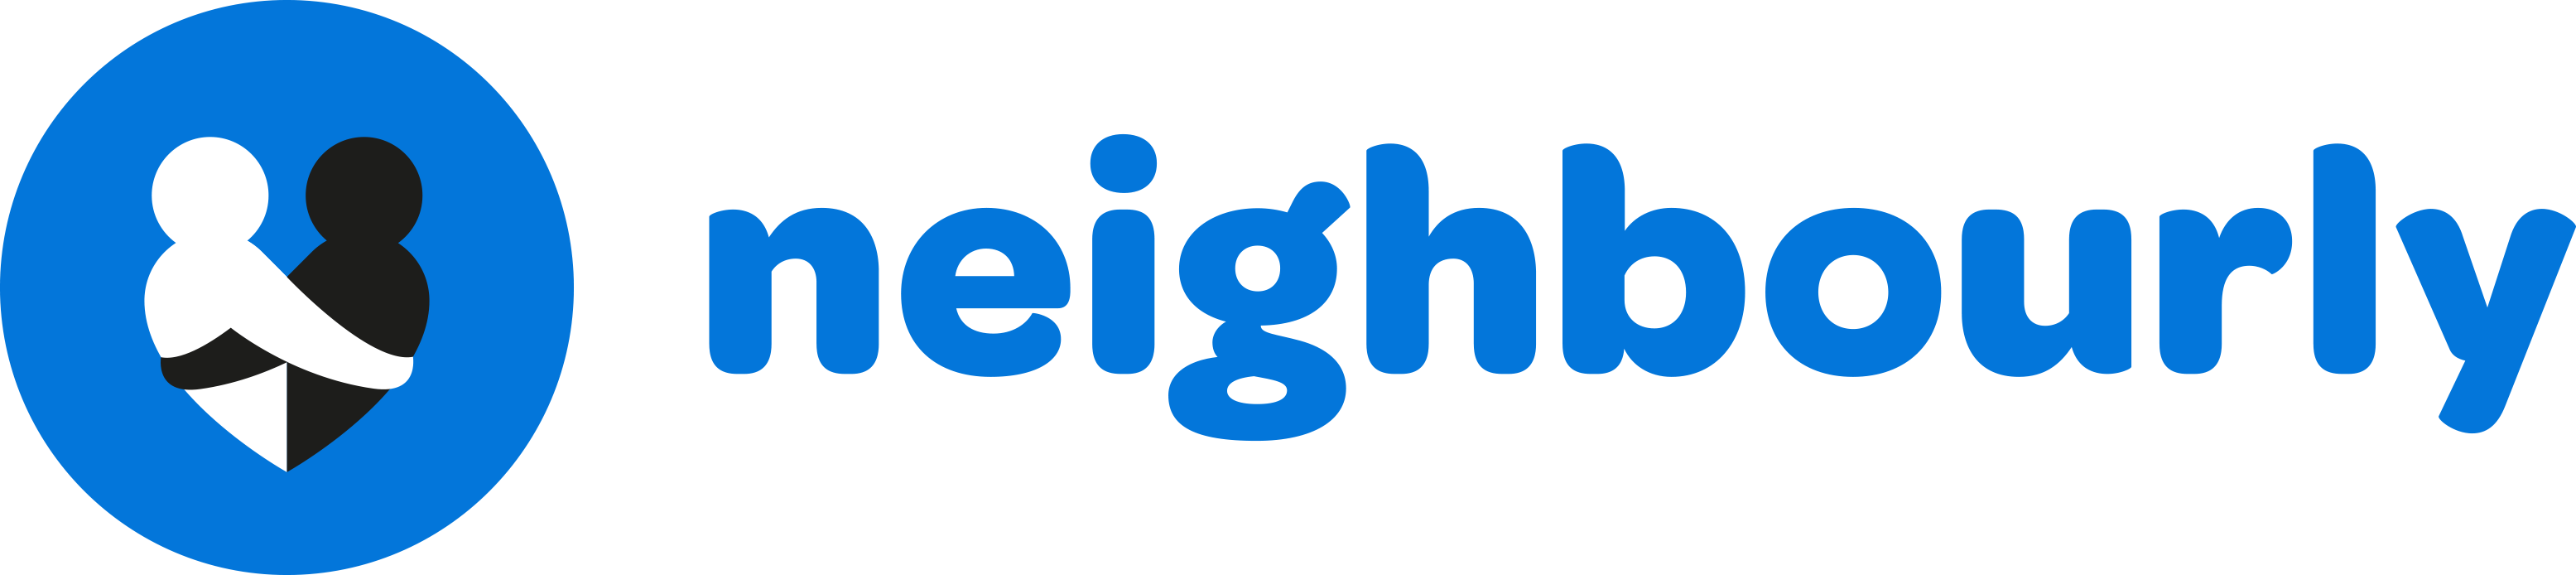 logo for Neighbourly Ltd